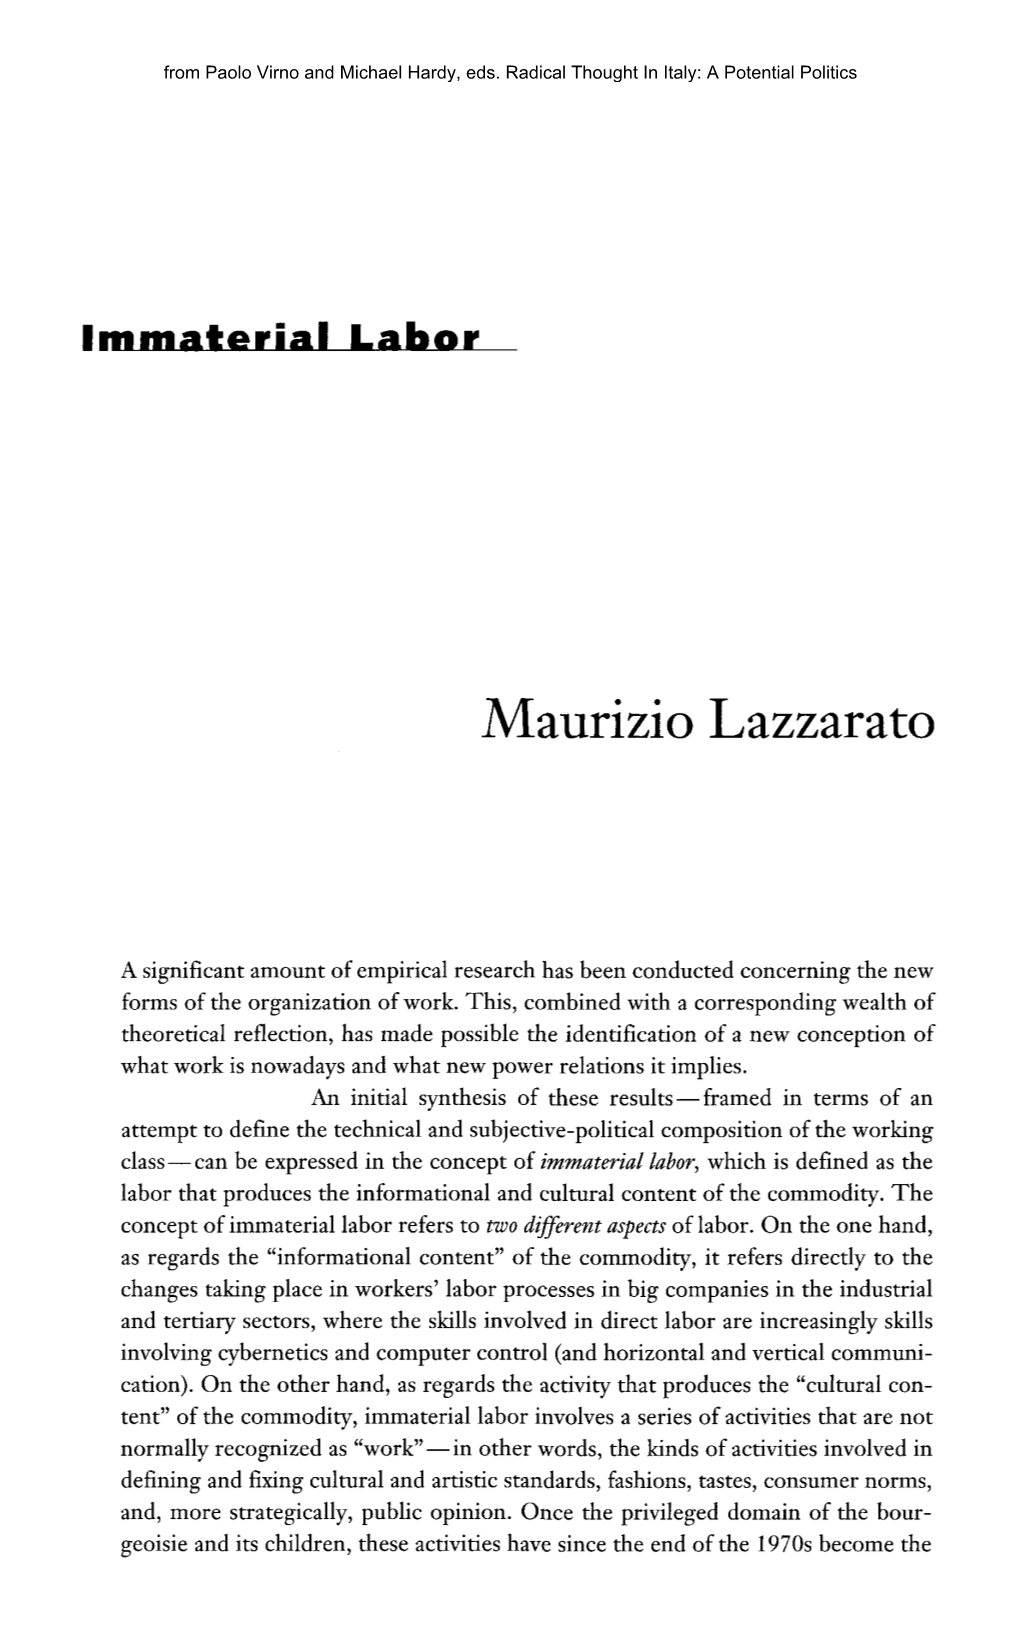 Maurizio Lazzarato: “Immaterial Labor”